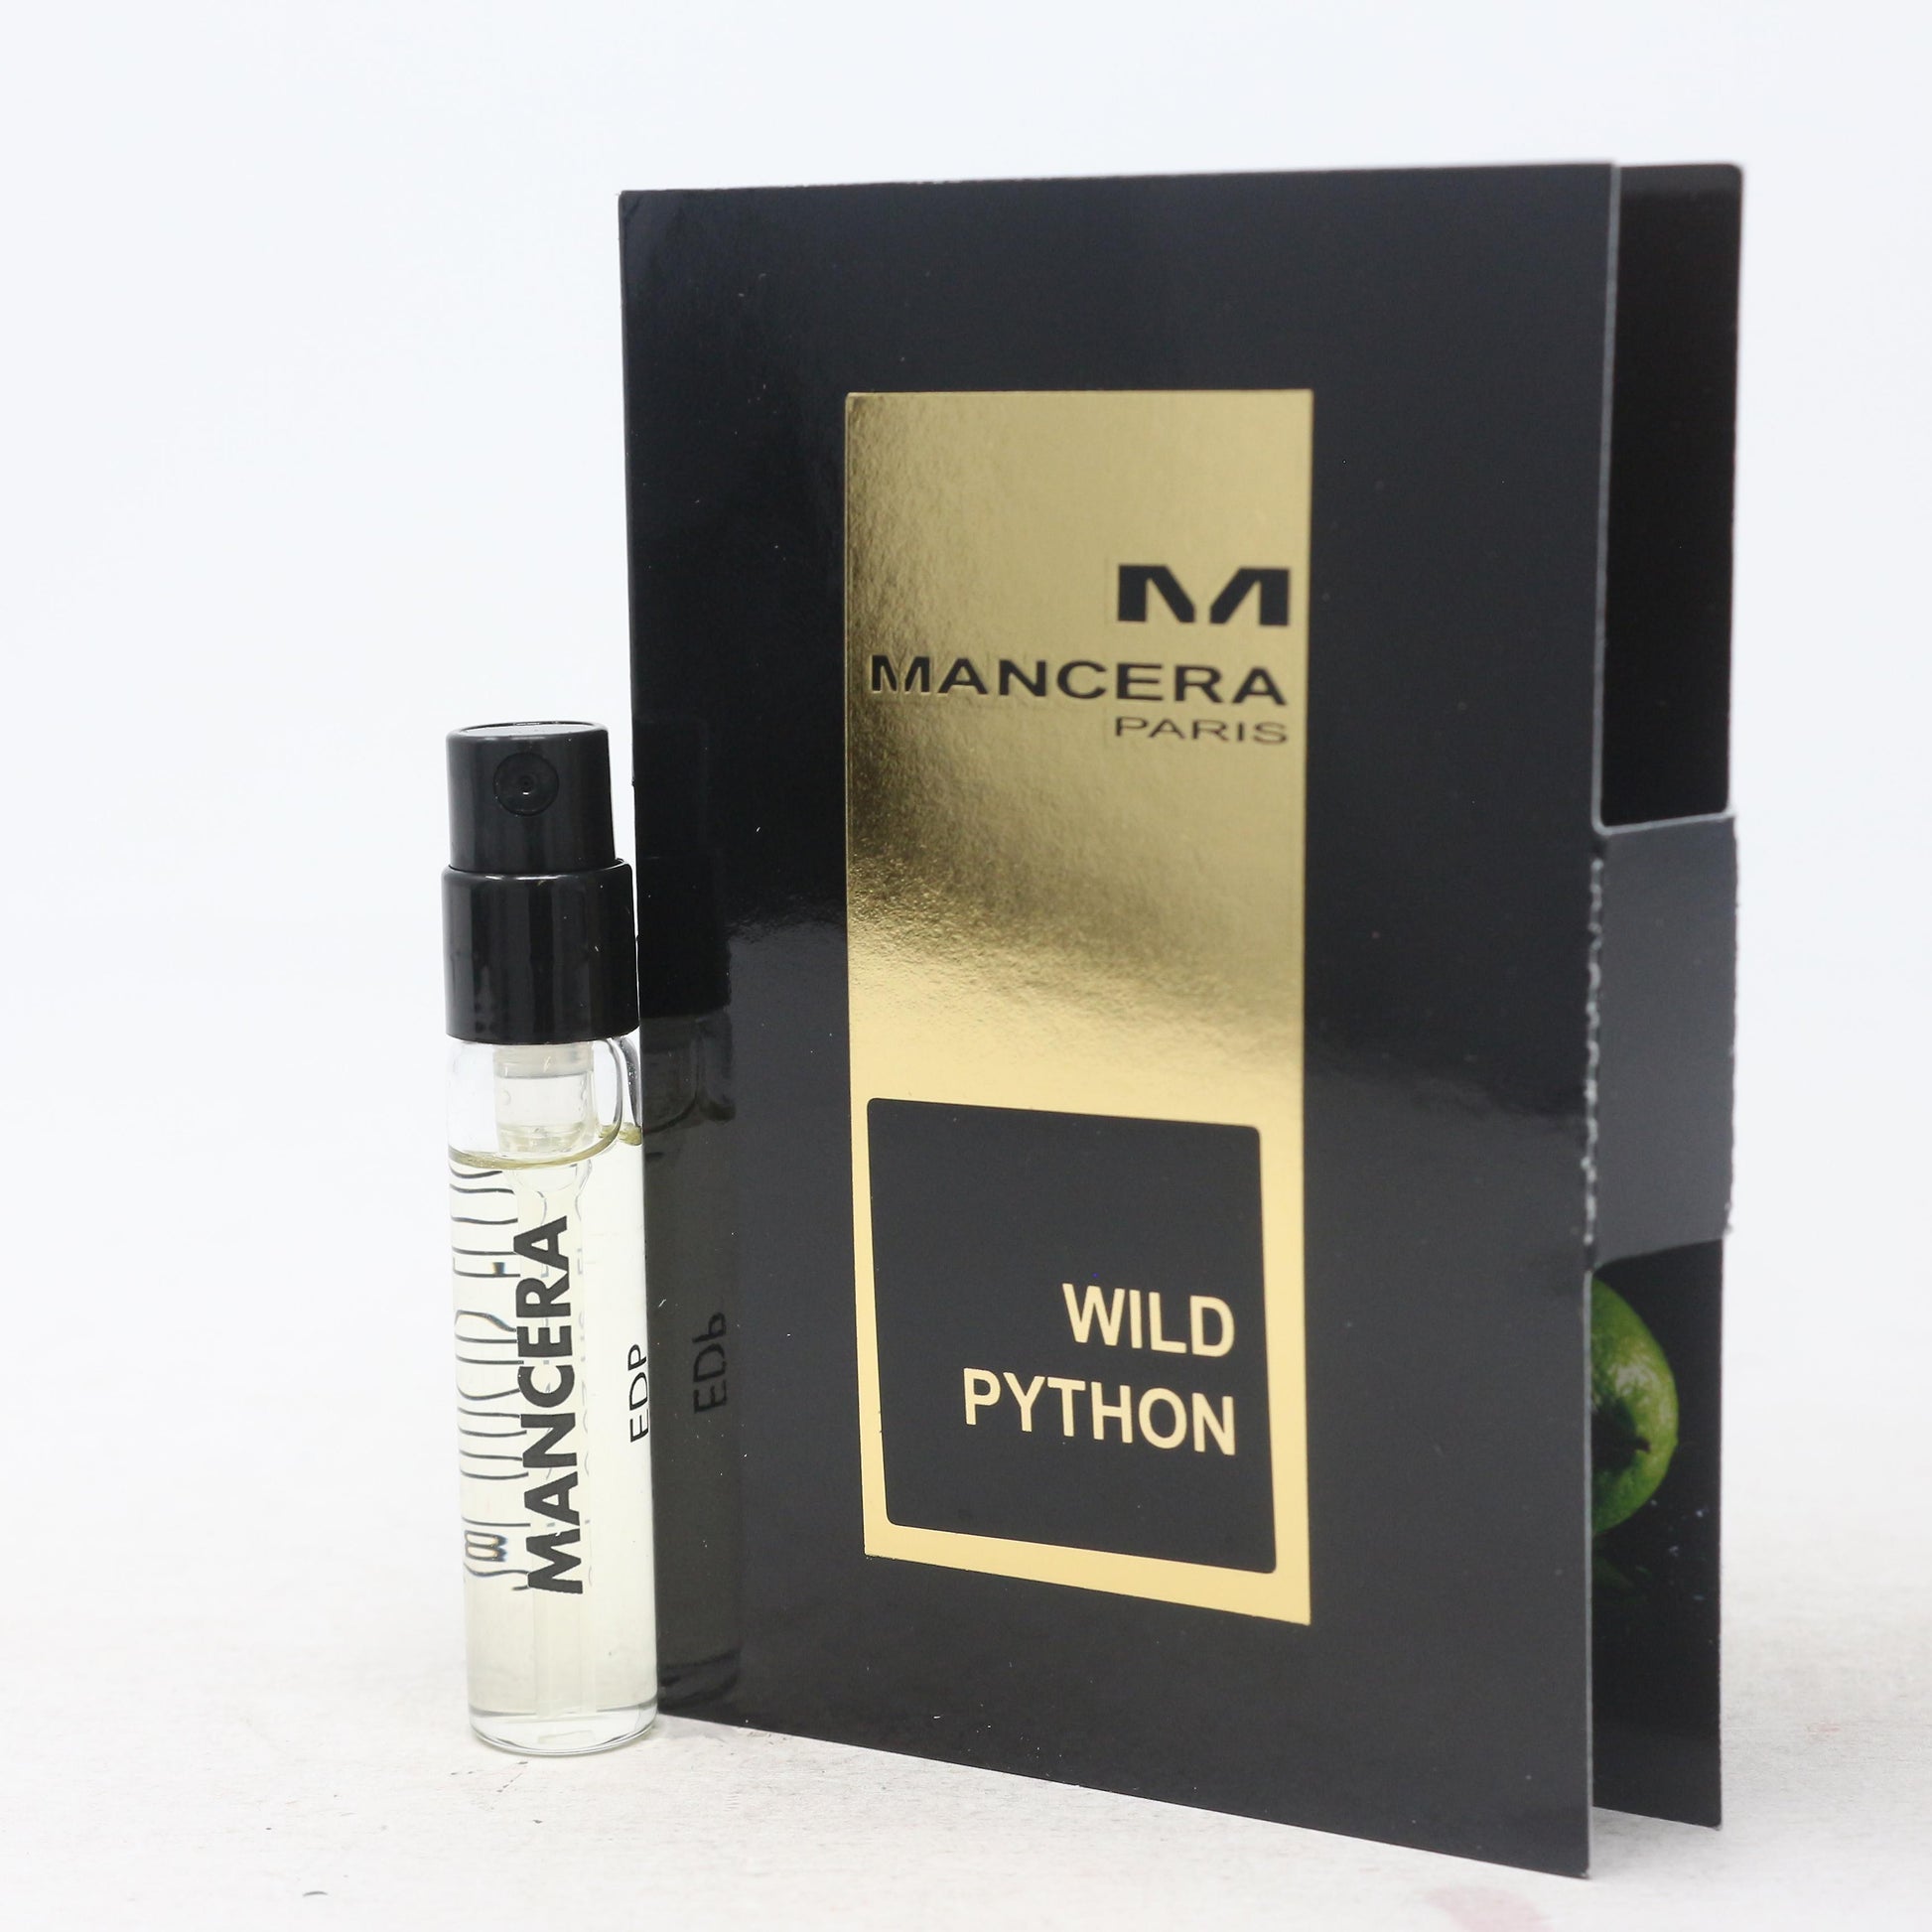 Mancera Wild Python ametlik näidis 2ml 0.07 fl.oz.